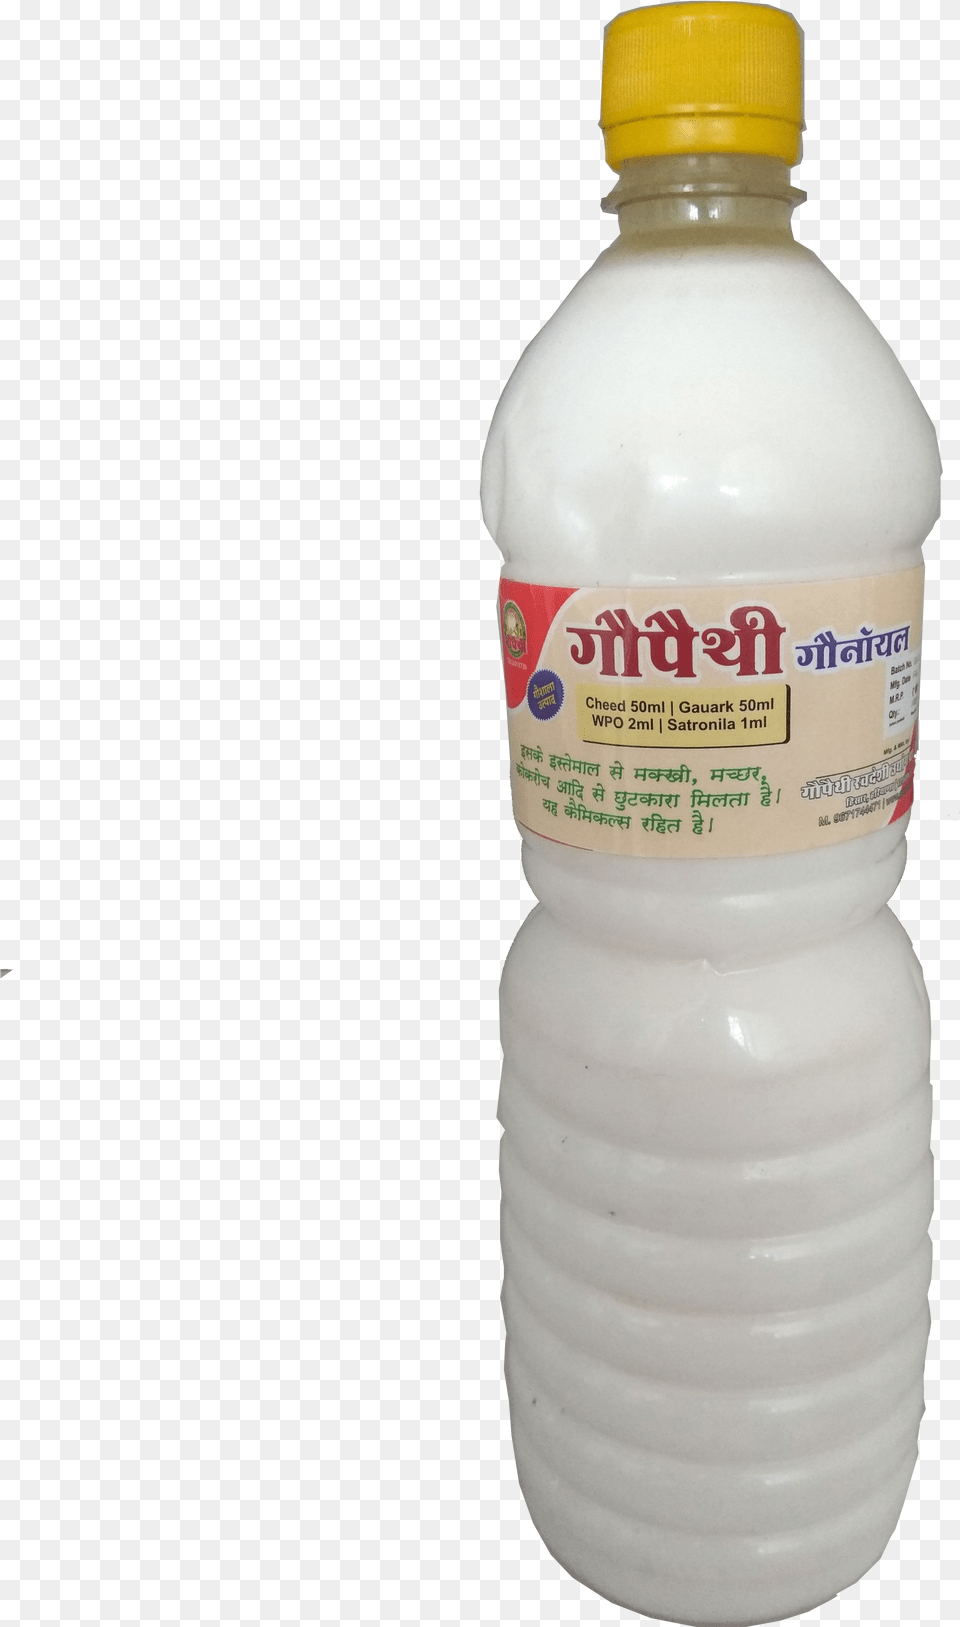 Products Plastic Bottle, Beverage, Milk, Shaker Free Transparent Png